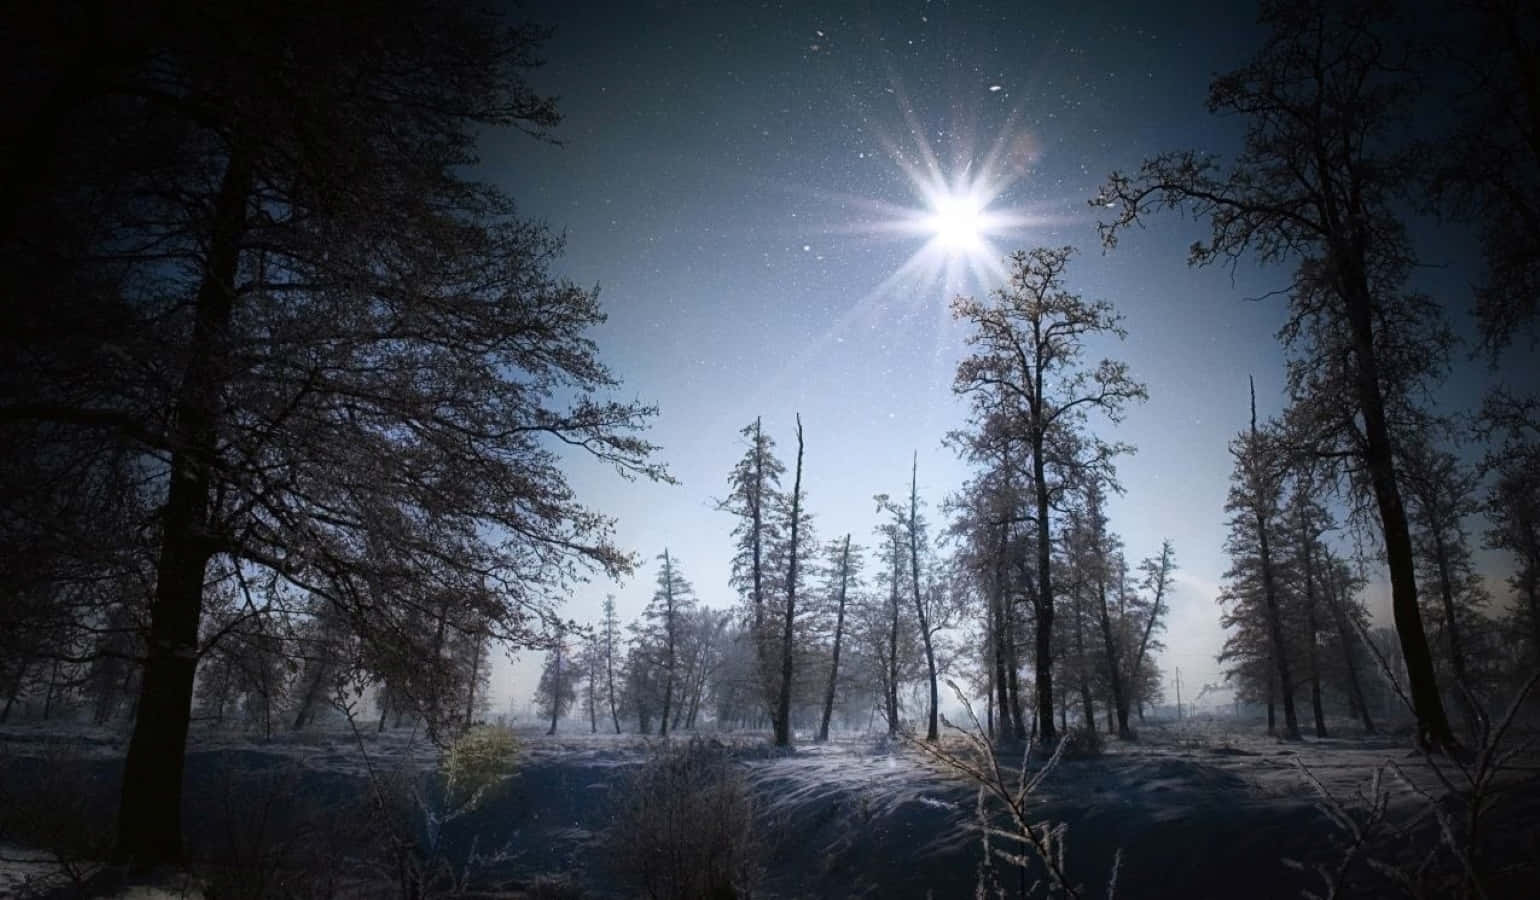 Enchanting Snow-filled Landscape During Winter Solstice